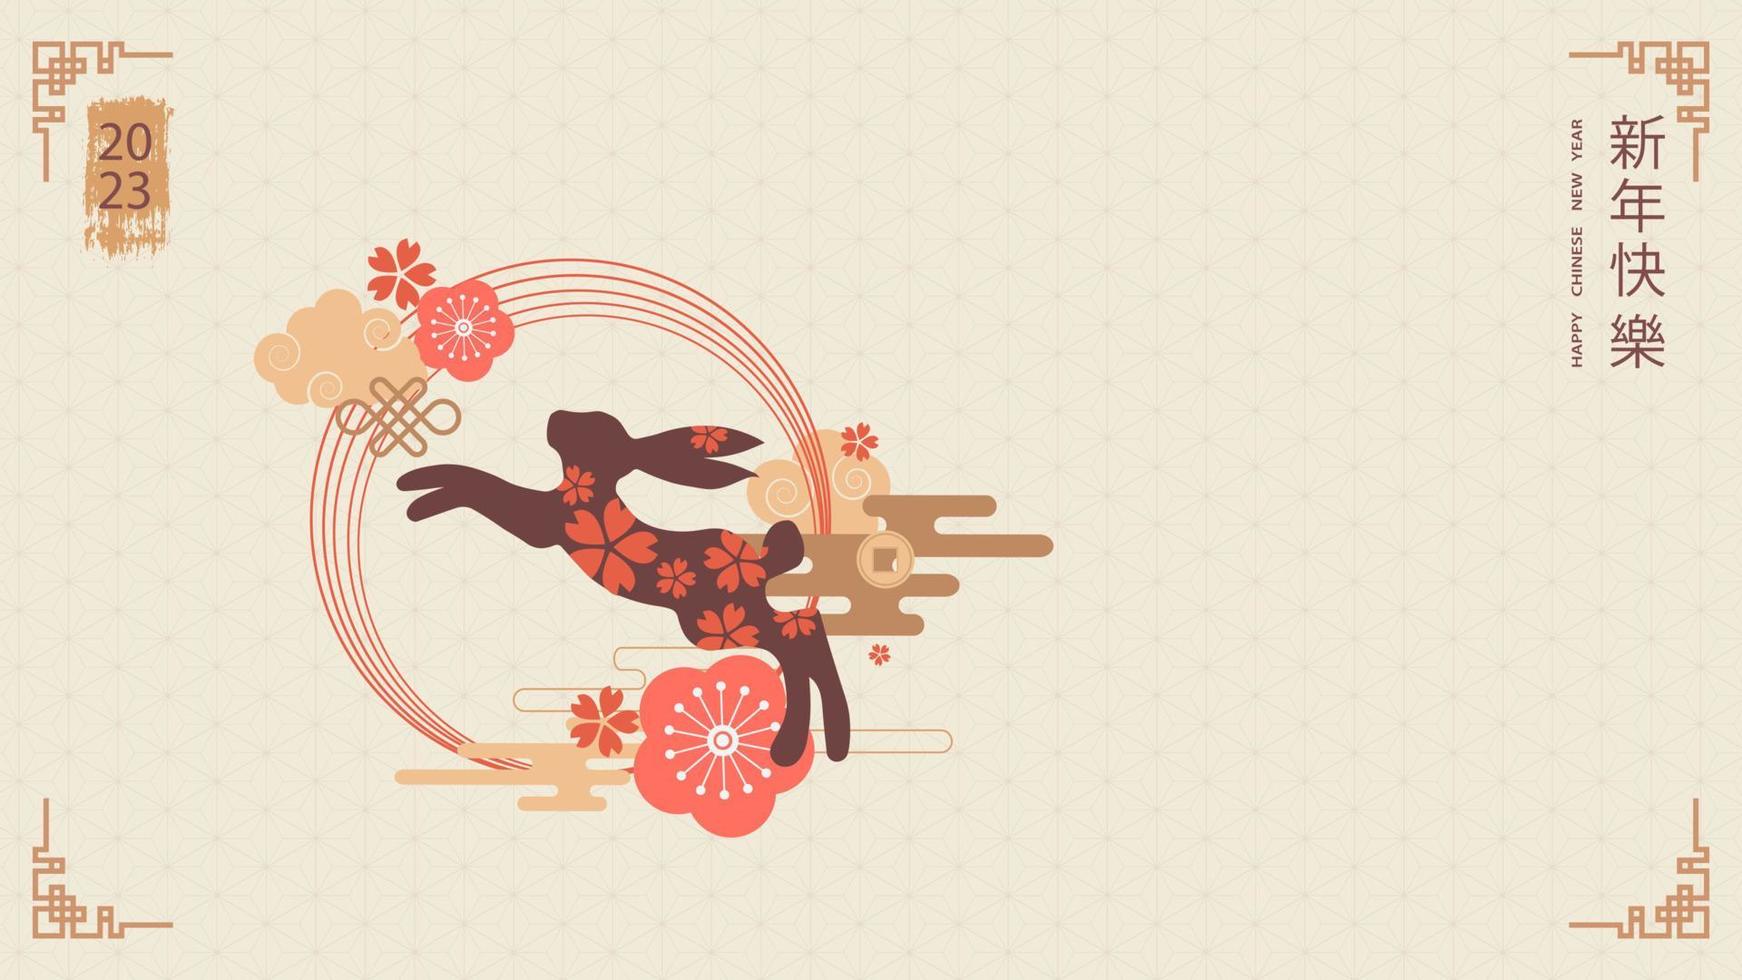 modèle de bannière pour la conception du nouvel an chinois avec lapin sautant et motifs et éléments traditionnels. traduction du chinois - bonne année, symbole du lapin. illustration vectorielle vecteur